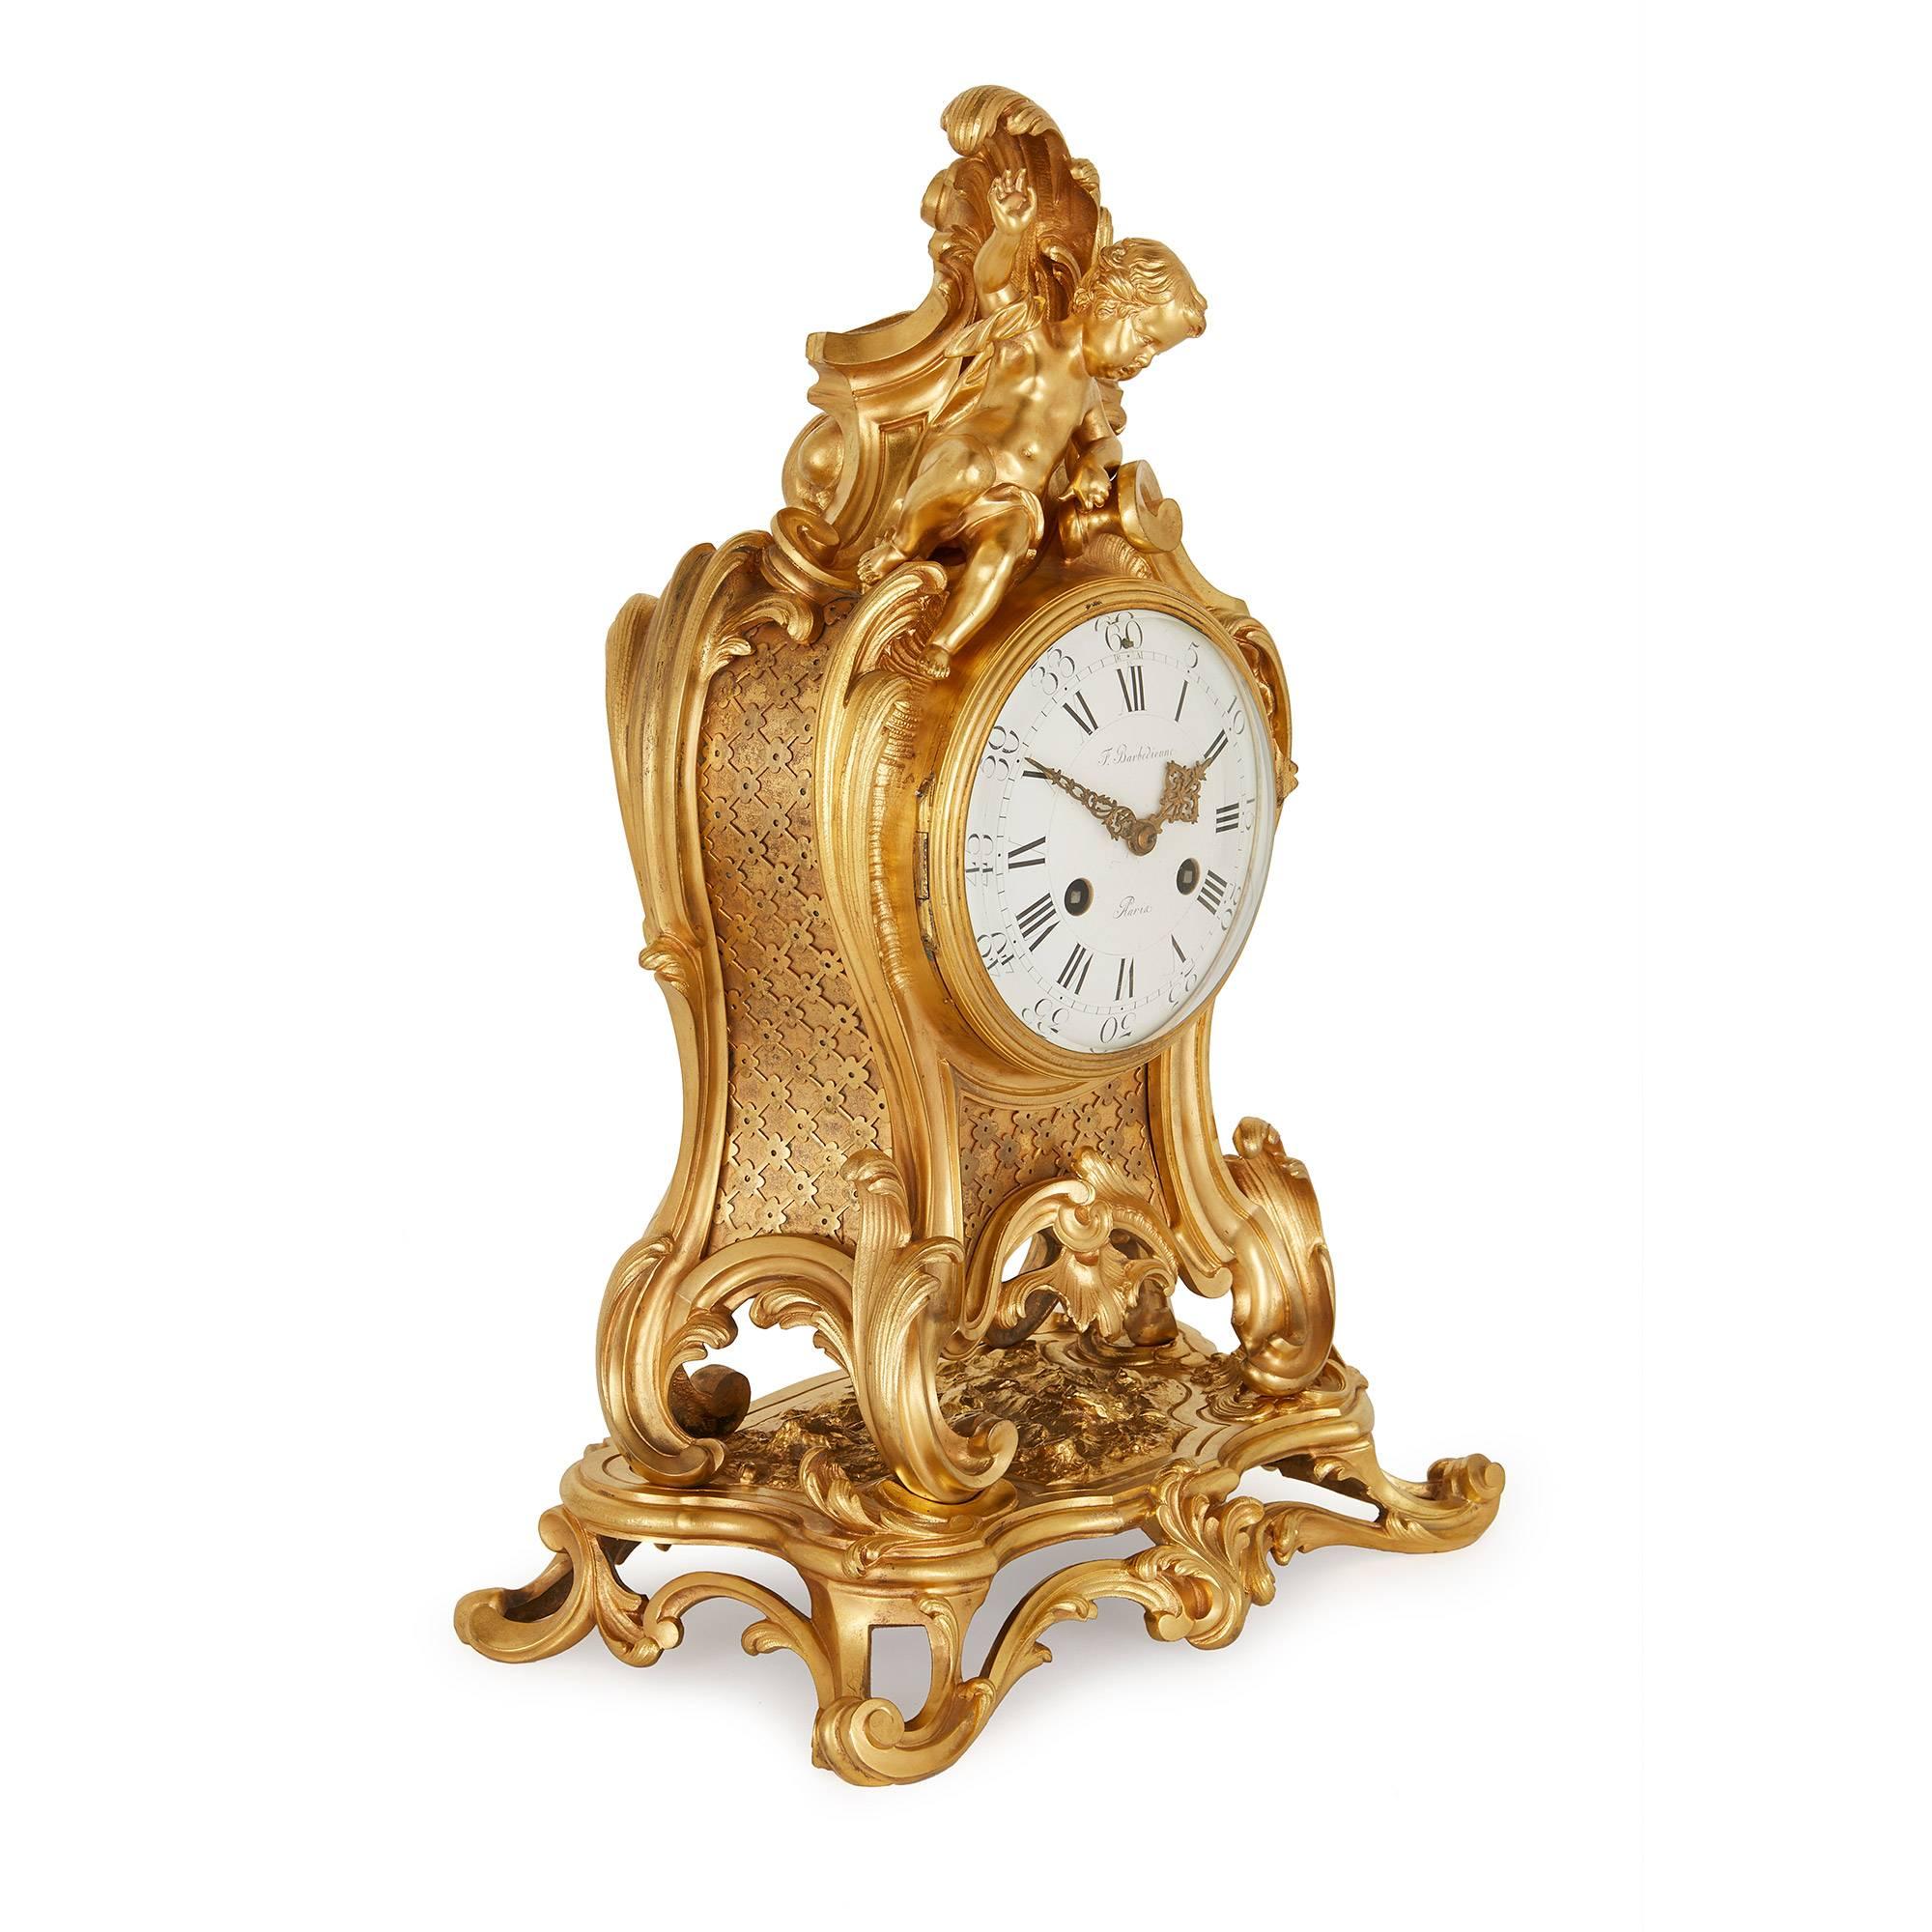 Comprenant une horloge centrale et une paire de candélabres latéraux, l'horloge en bronze doré à cadran circulaire et chiffres romains signée 'F. Barbedienne